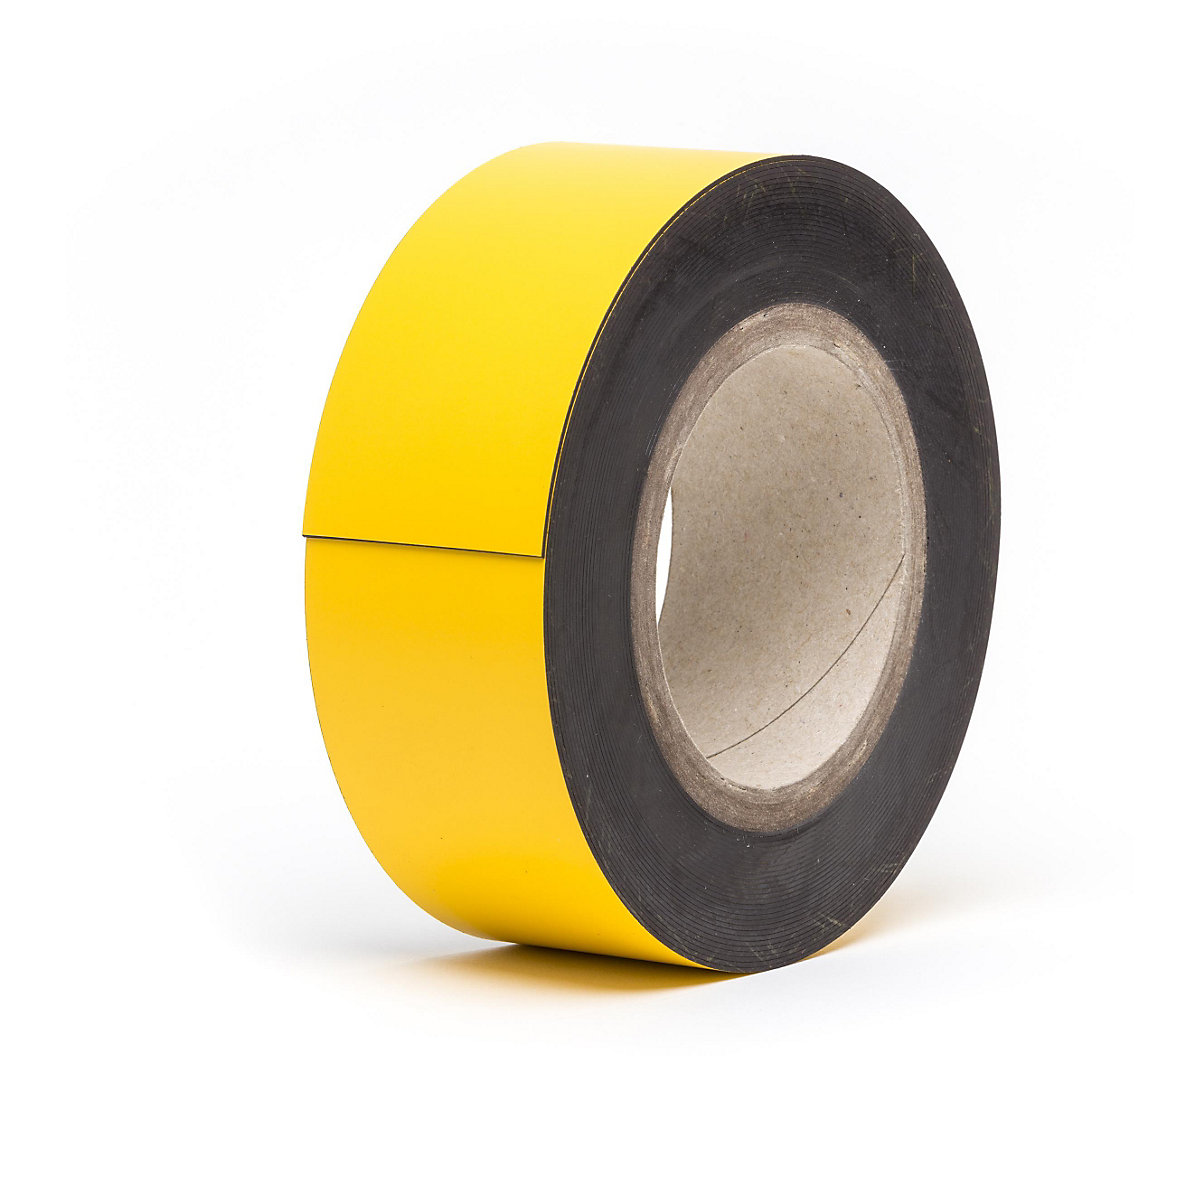 Magnetne skladišne pločice, u roli, u žutoj boji, visina 60 mm, dužina role 10 m-15